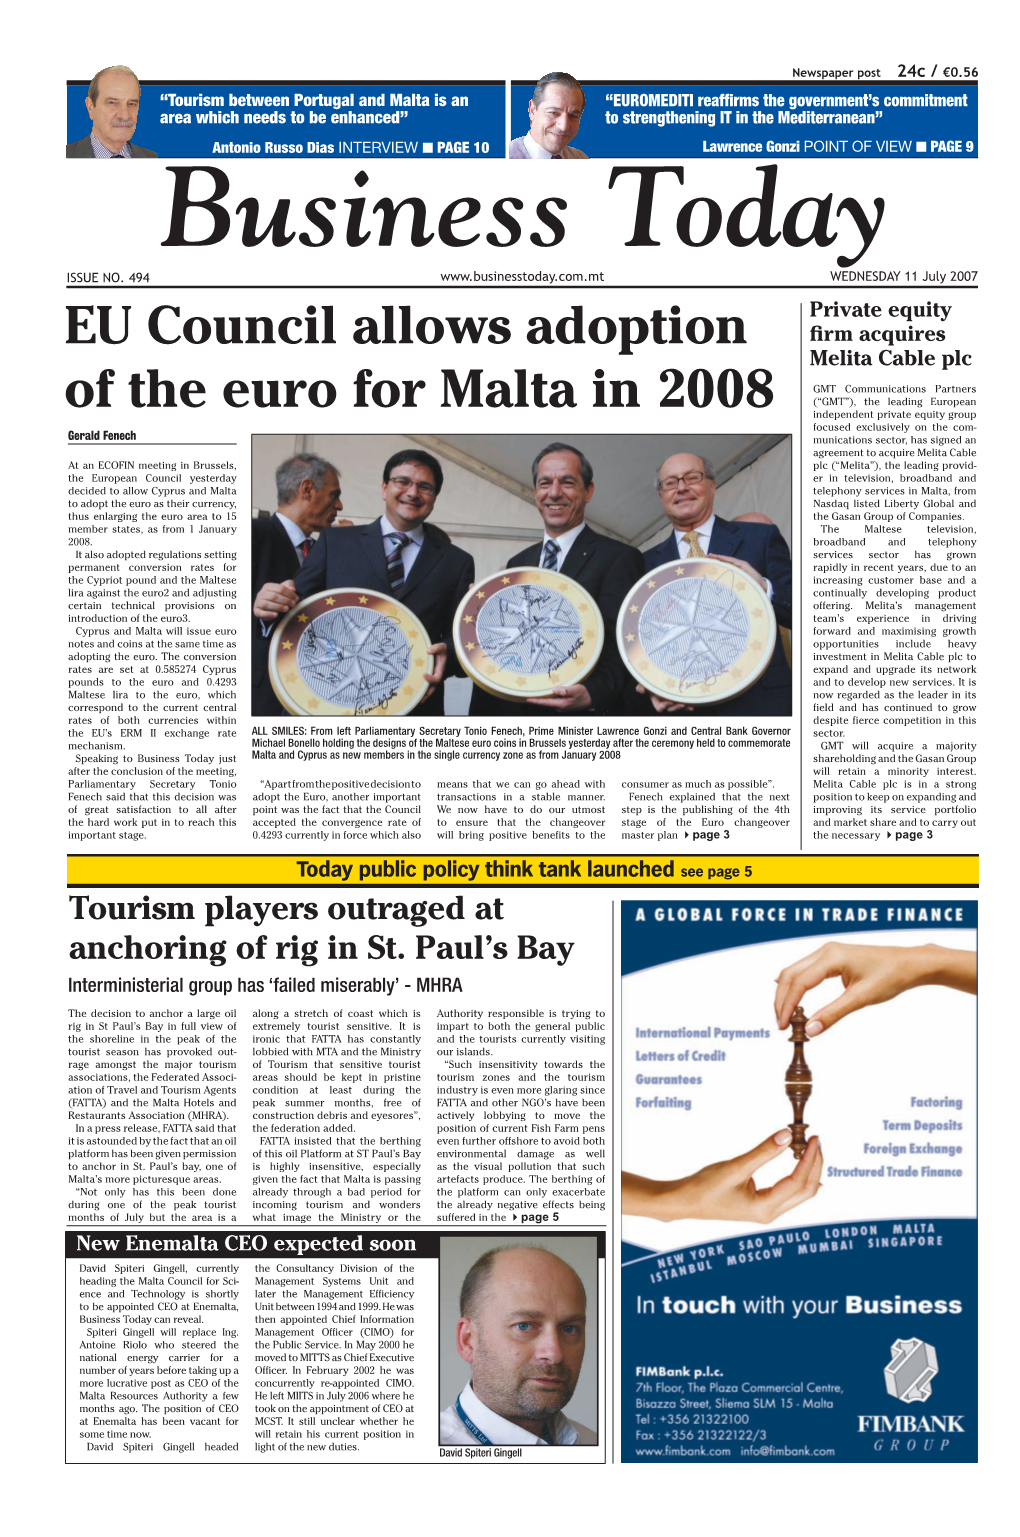 EU Council Allows Adoption of the Euro for Malta in 2008 GMT